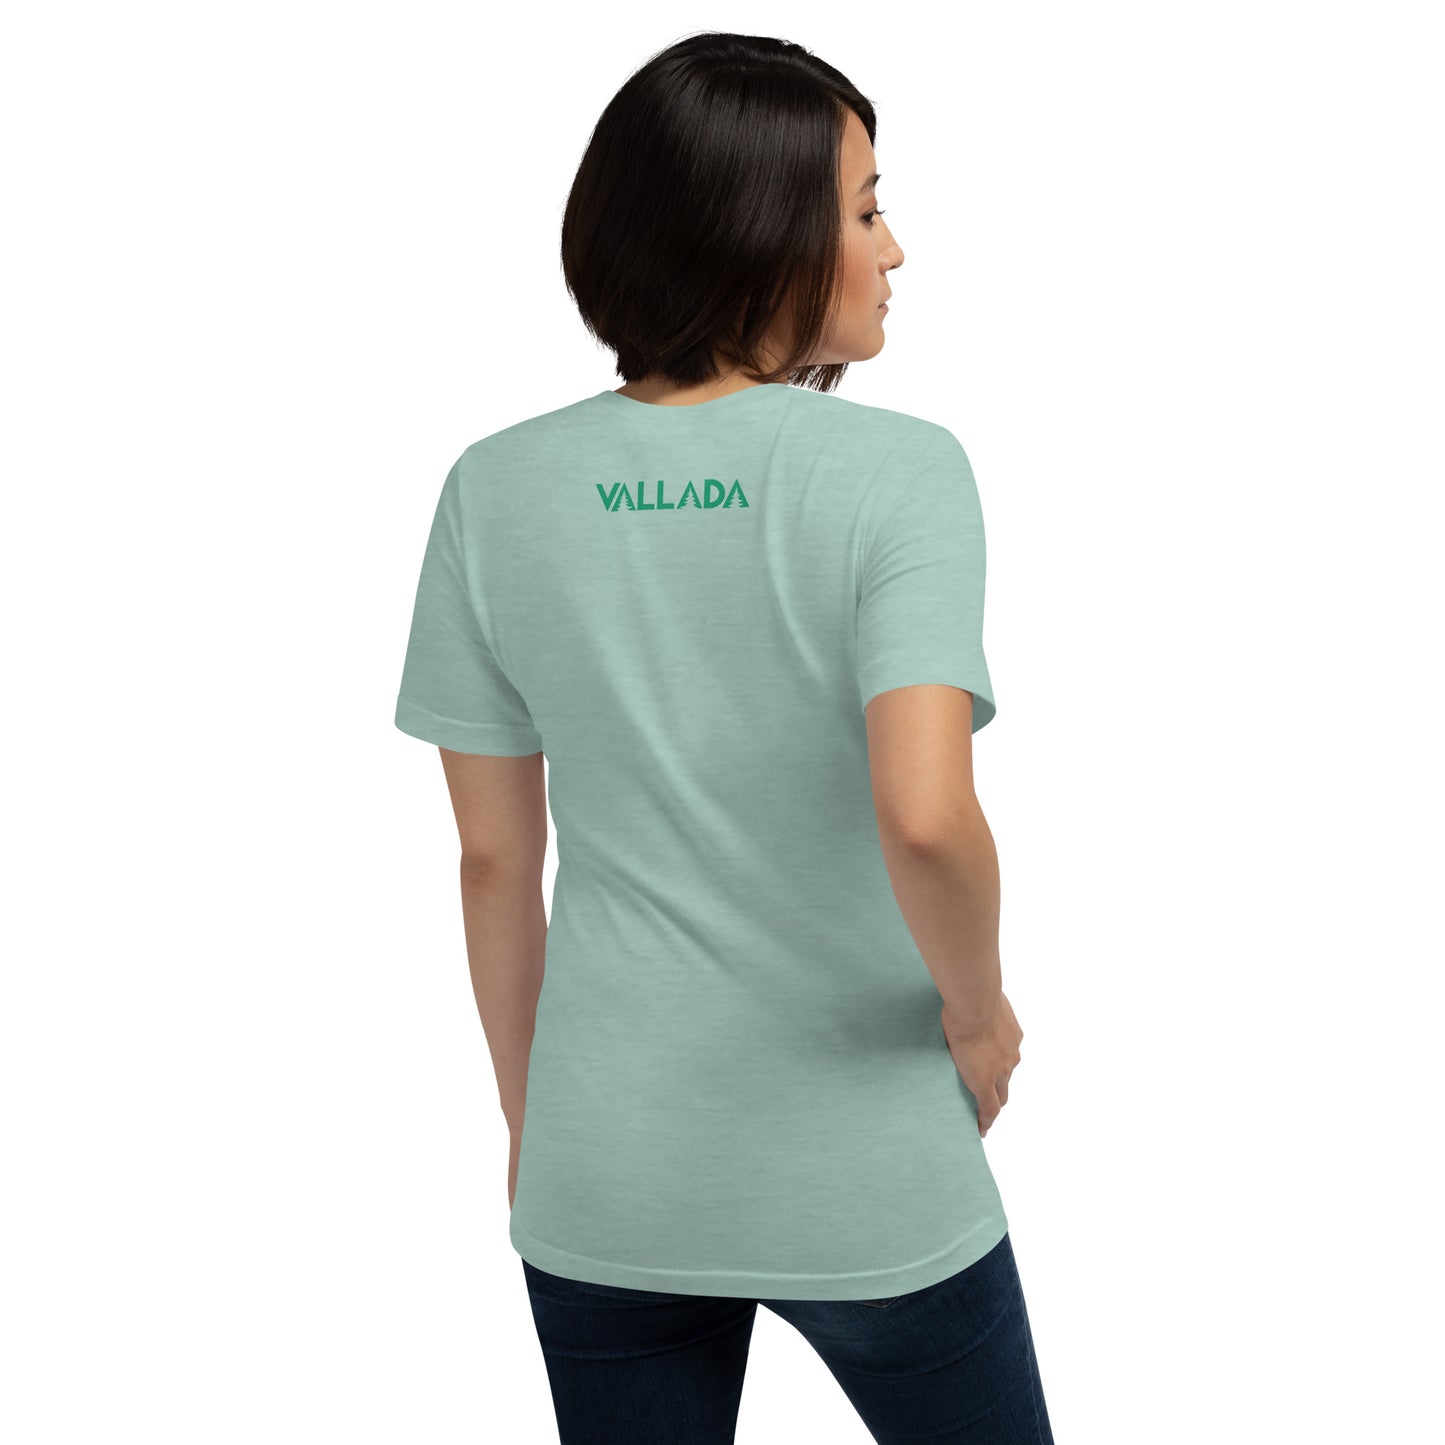 Diese Wanderfreundin trägt ein taubenblau meliertes Damen T-Shirt aus der Säntis-Collection von Vallada. Sie steht mit dem Rücken zur Kamera, so dass wir das Vallada-Logo sehen.